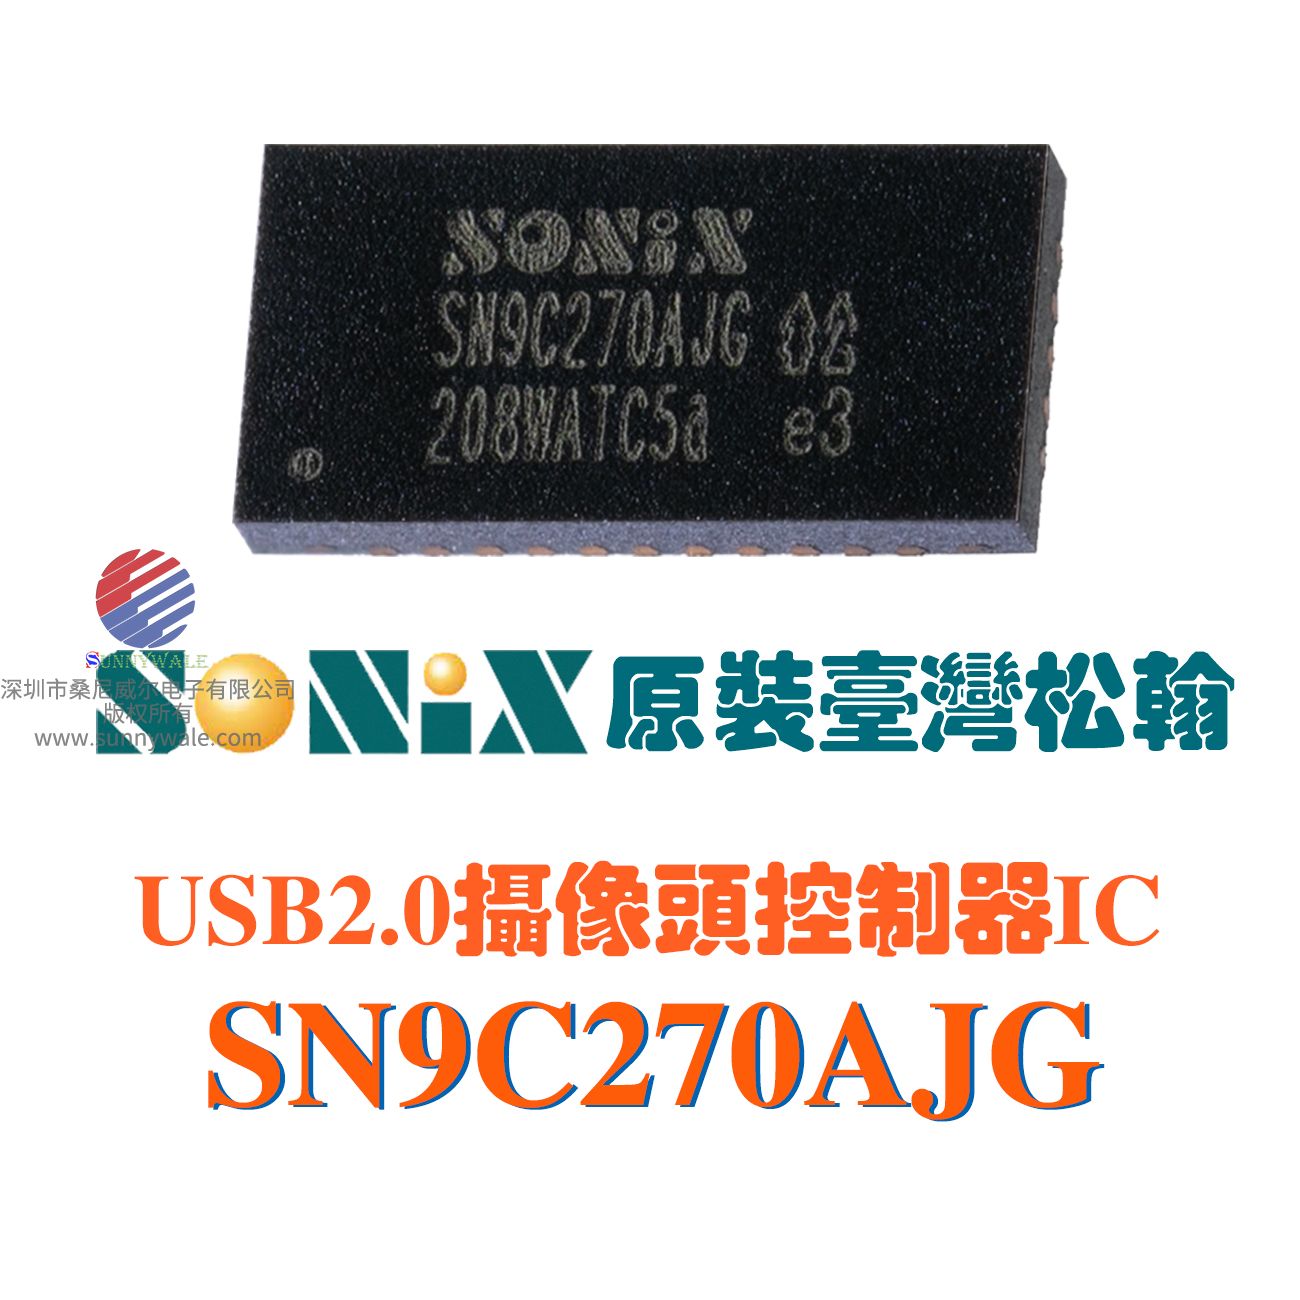 SN9C270AJG，ZX302AJG的老版本， USB 2.0视频PC摄像头控制器IC，松翰摄像头DSP，完全兼容ZX302AJG, 支持SXGA(1280*1024P)图像传感器的ISP